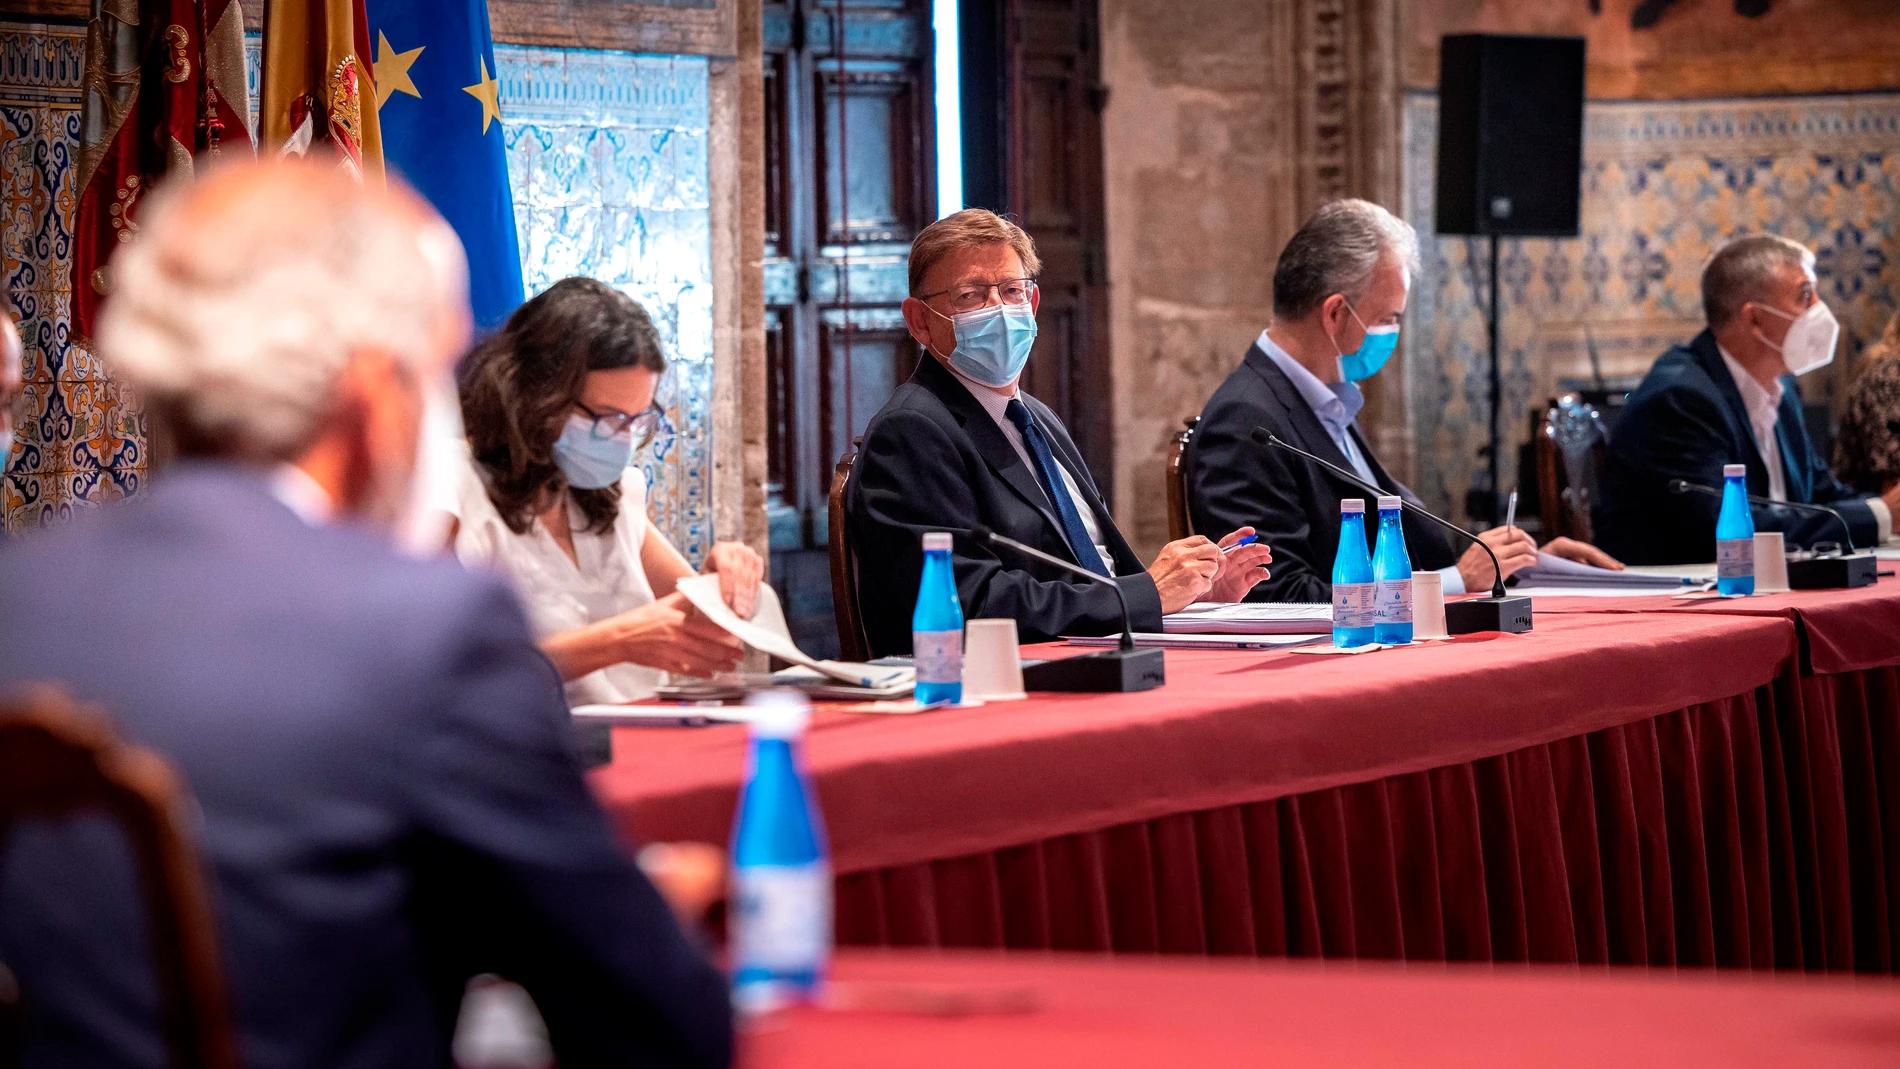 El presidente de la Generalitat, Ximo Puig, preside la reunión de la Mesa del Diálogo Social, en la que participan, representantes de la patronal y los sindicatos, además de varios miembros del Gobierno valenciano. EFE/Biel Aliño